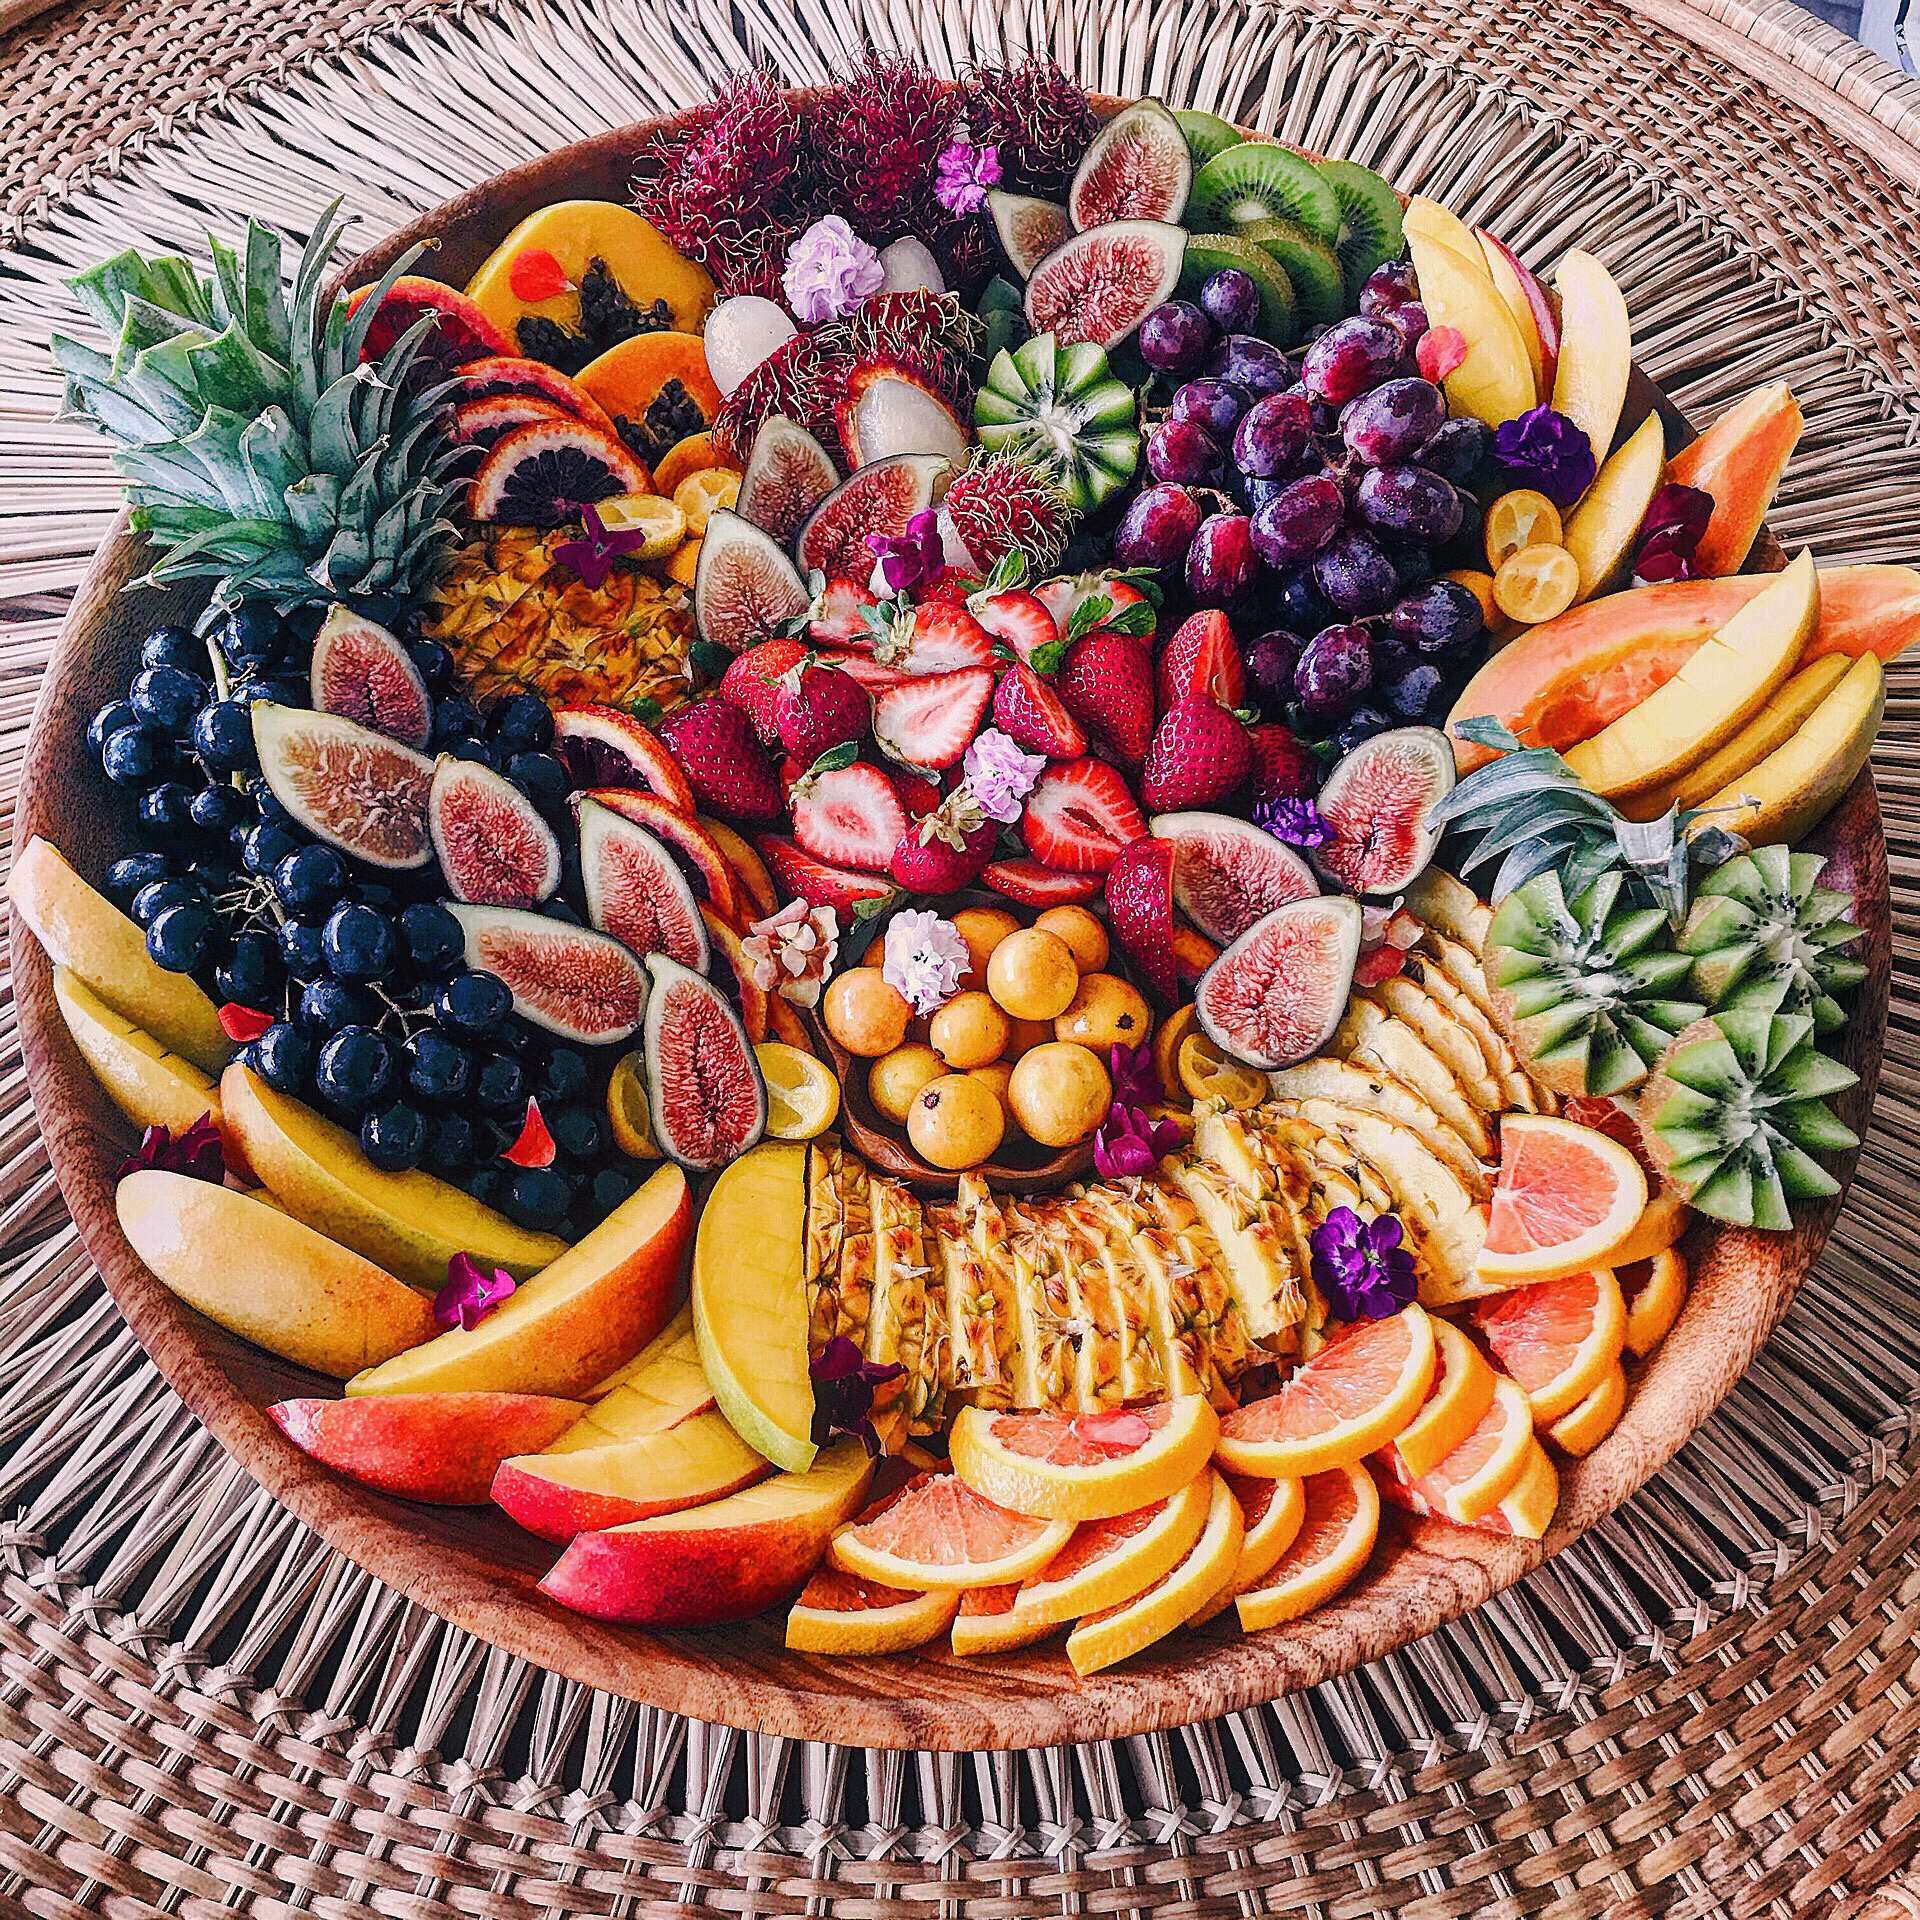 HIPP Fruit Platter 2021.jpg